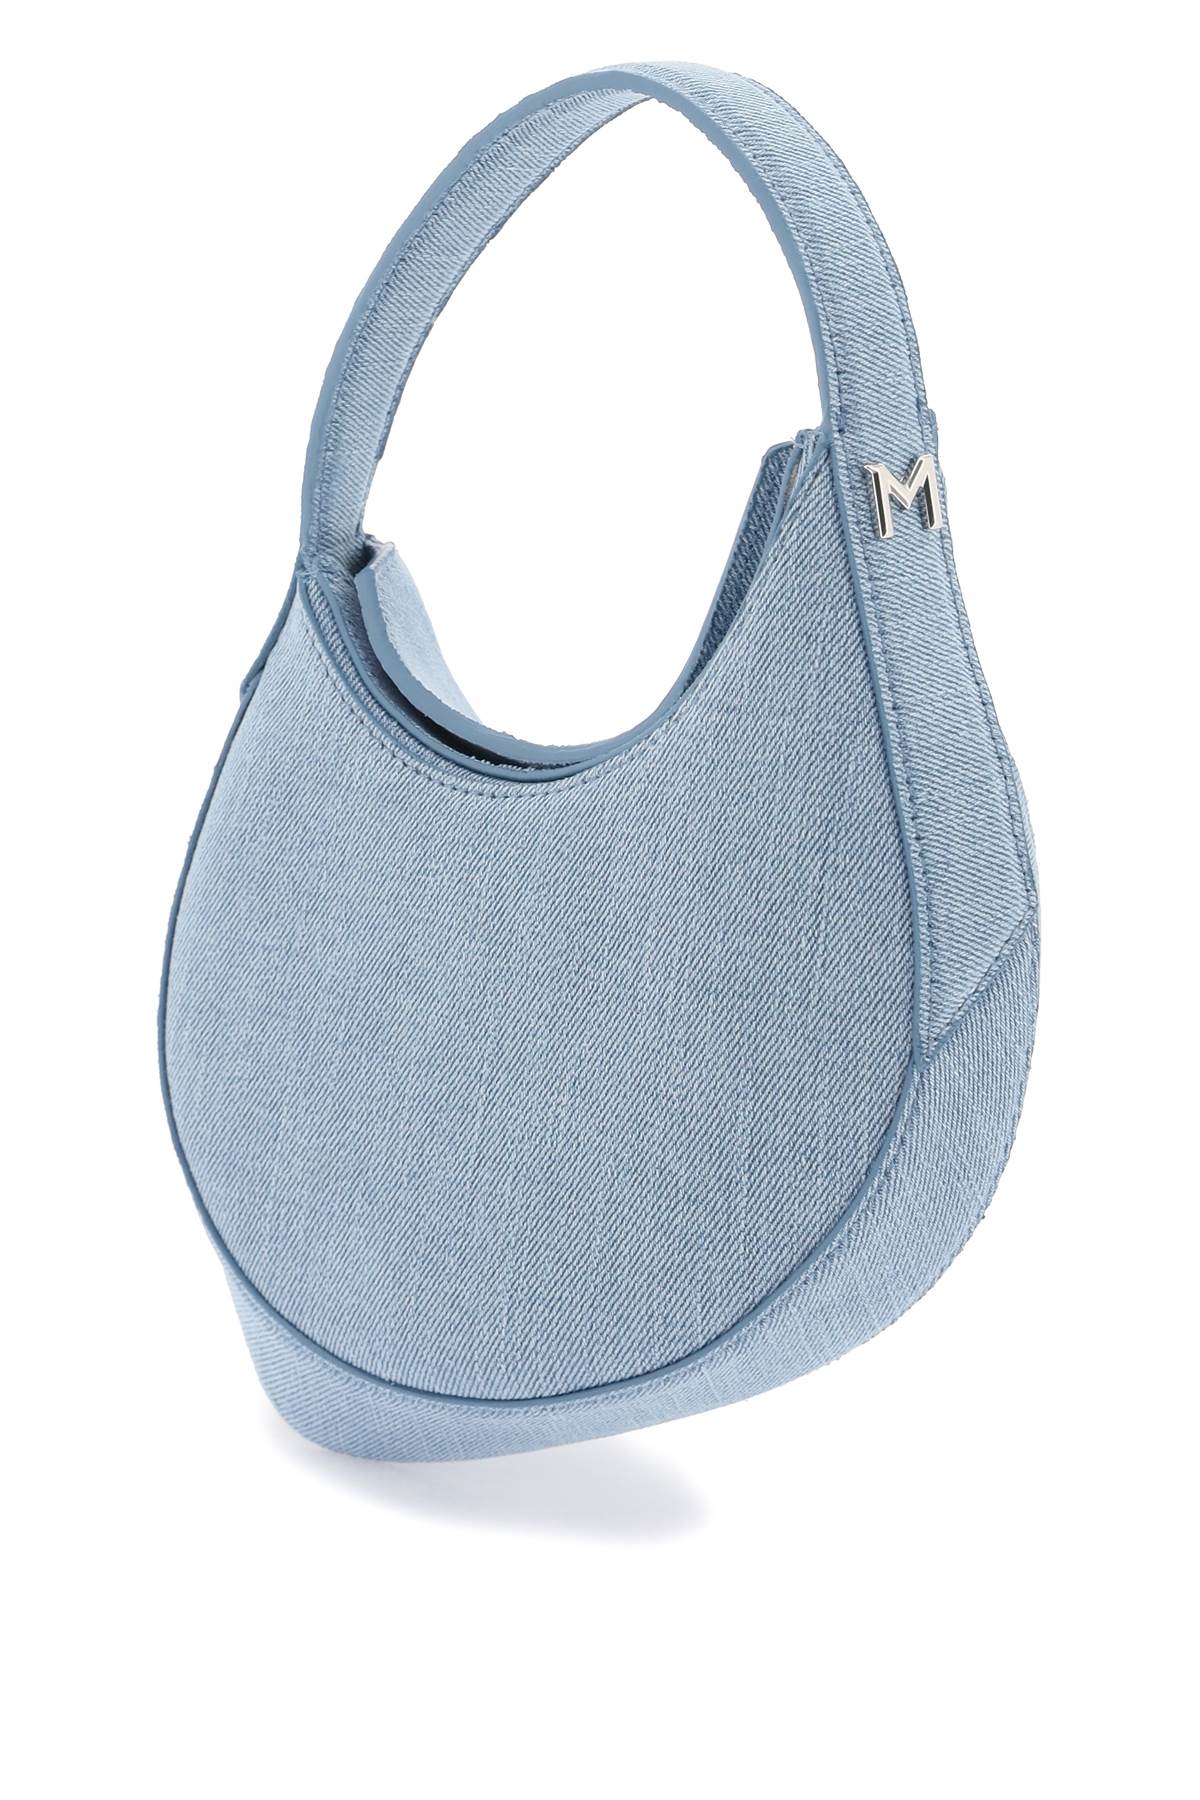 MUGLER Spiral Denim Mini Handbag in Light Blue with Leather Pocket